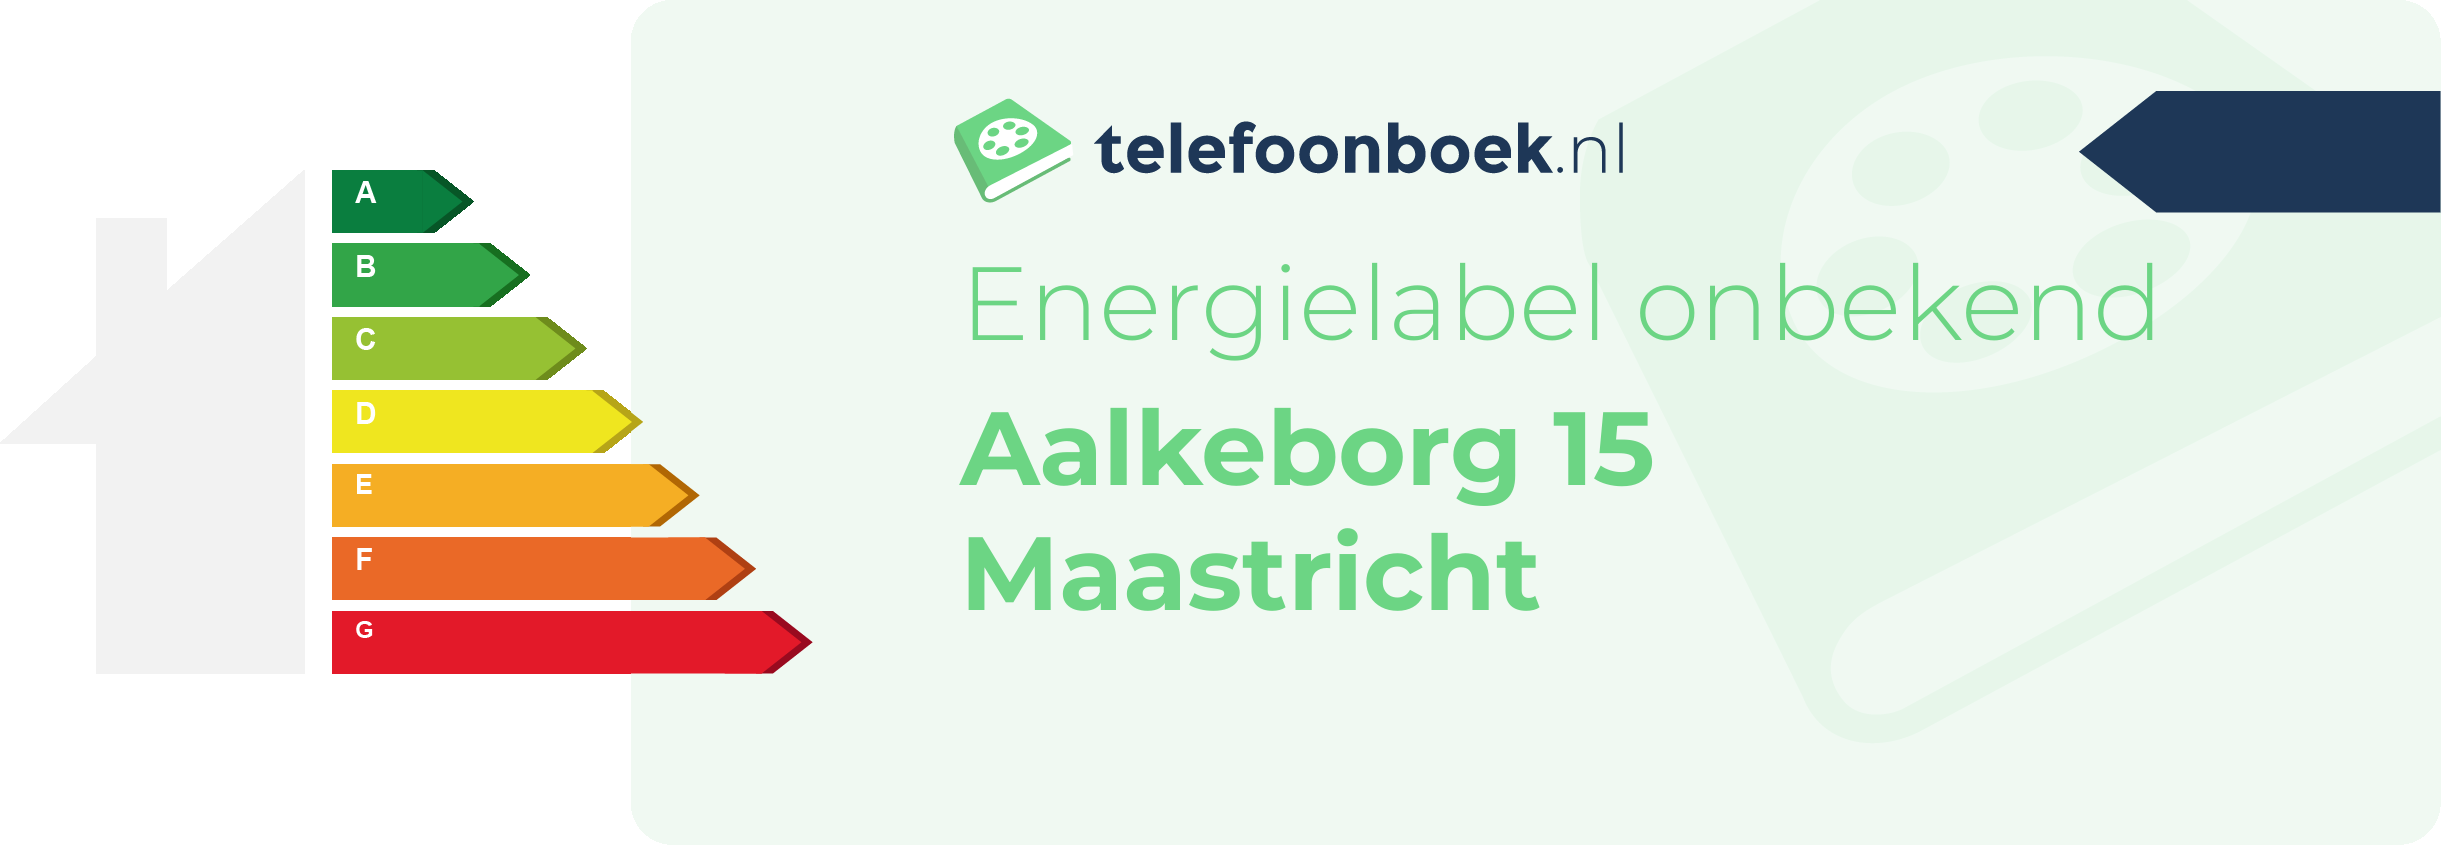 Energielabel Aalkeborg 15 Maastricht